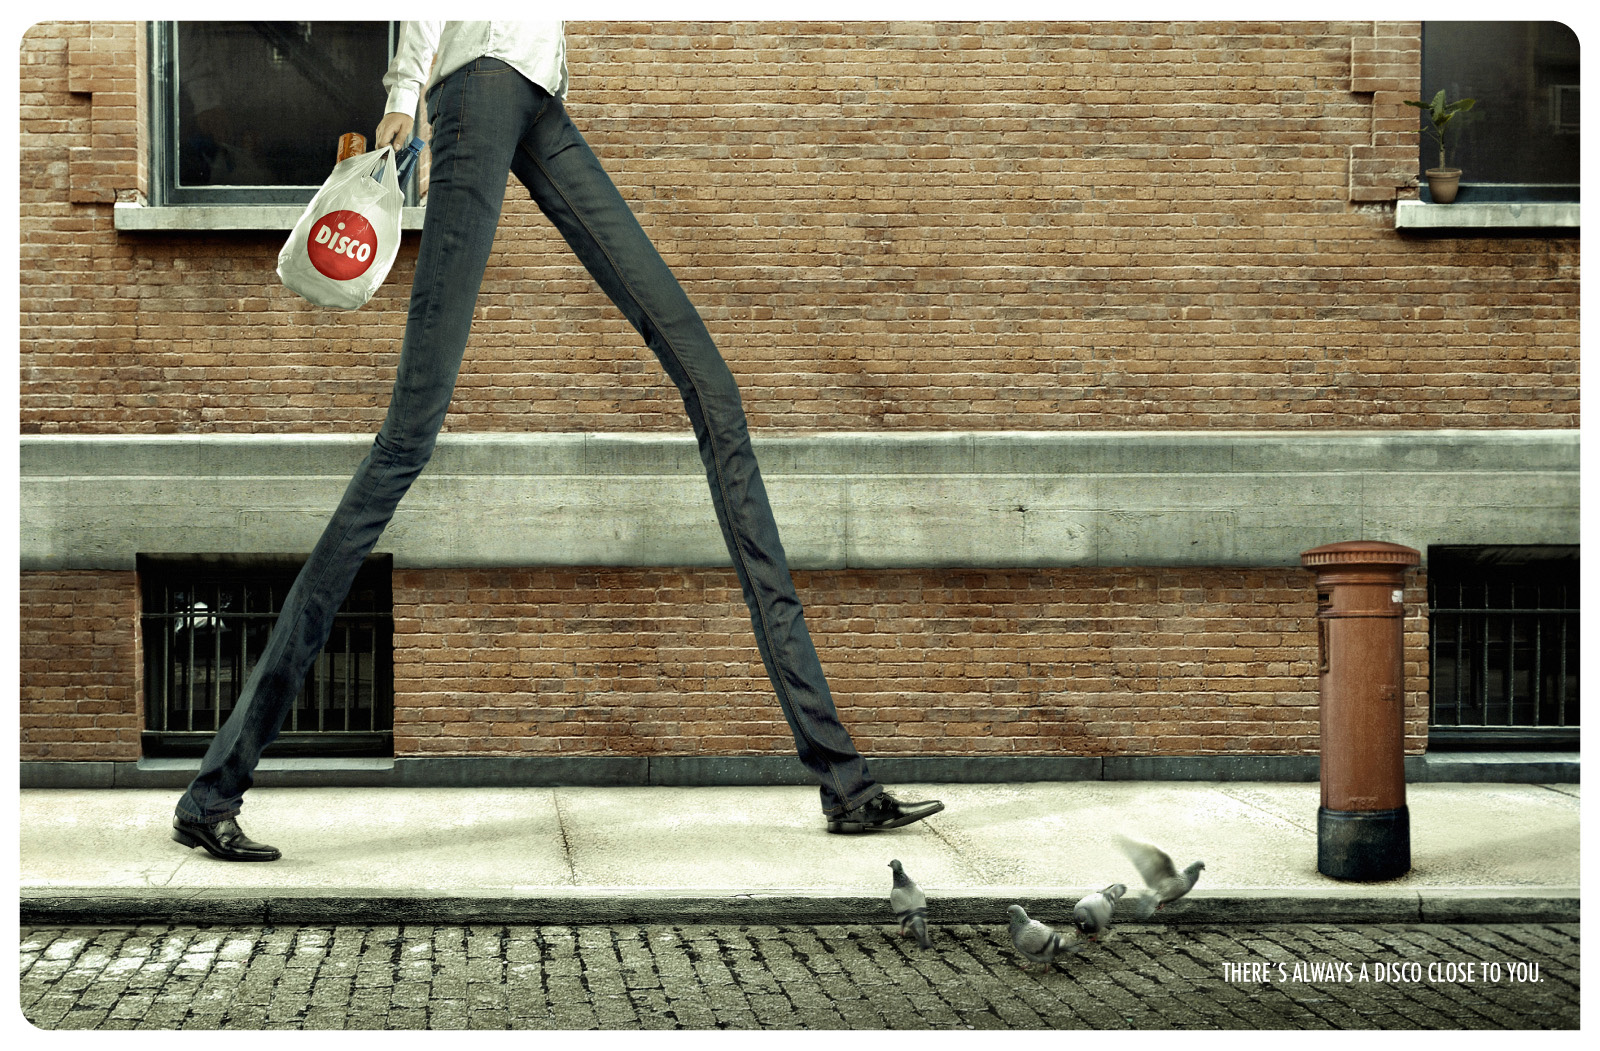 Включи игру длинные ноги. Креативная реклама. Необычная реклама одежды. Человек с длинными догами. Классная креативная реклама.